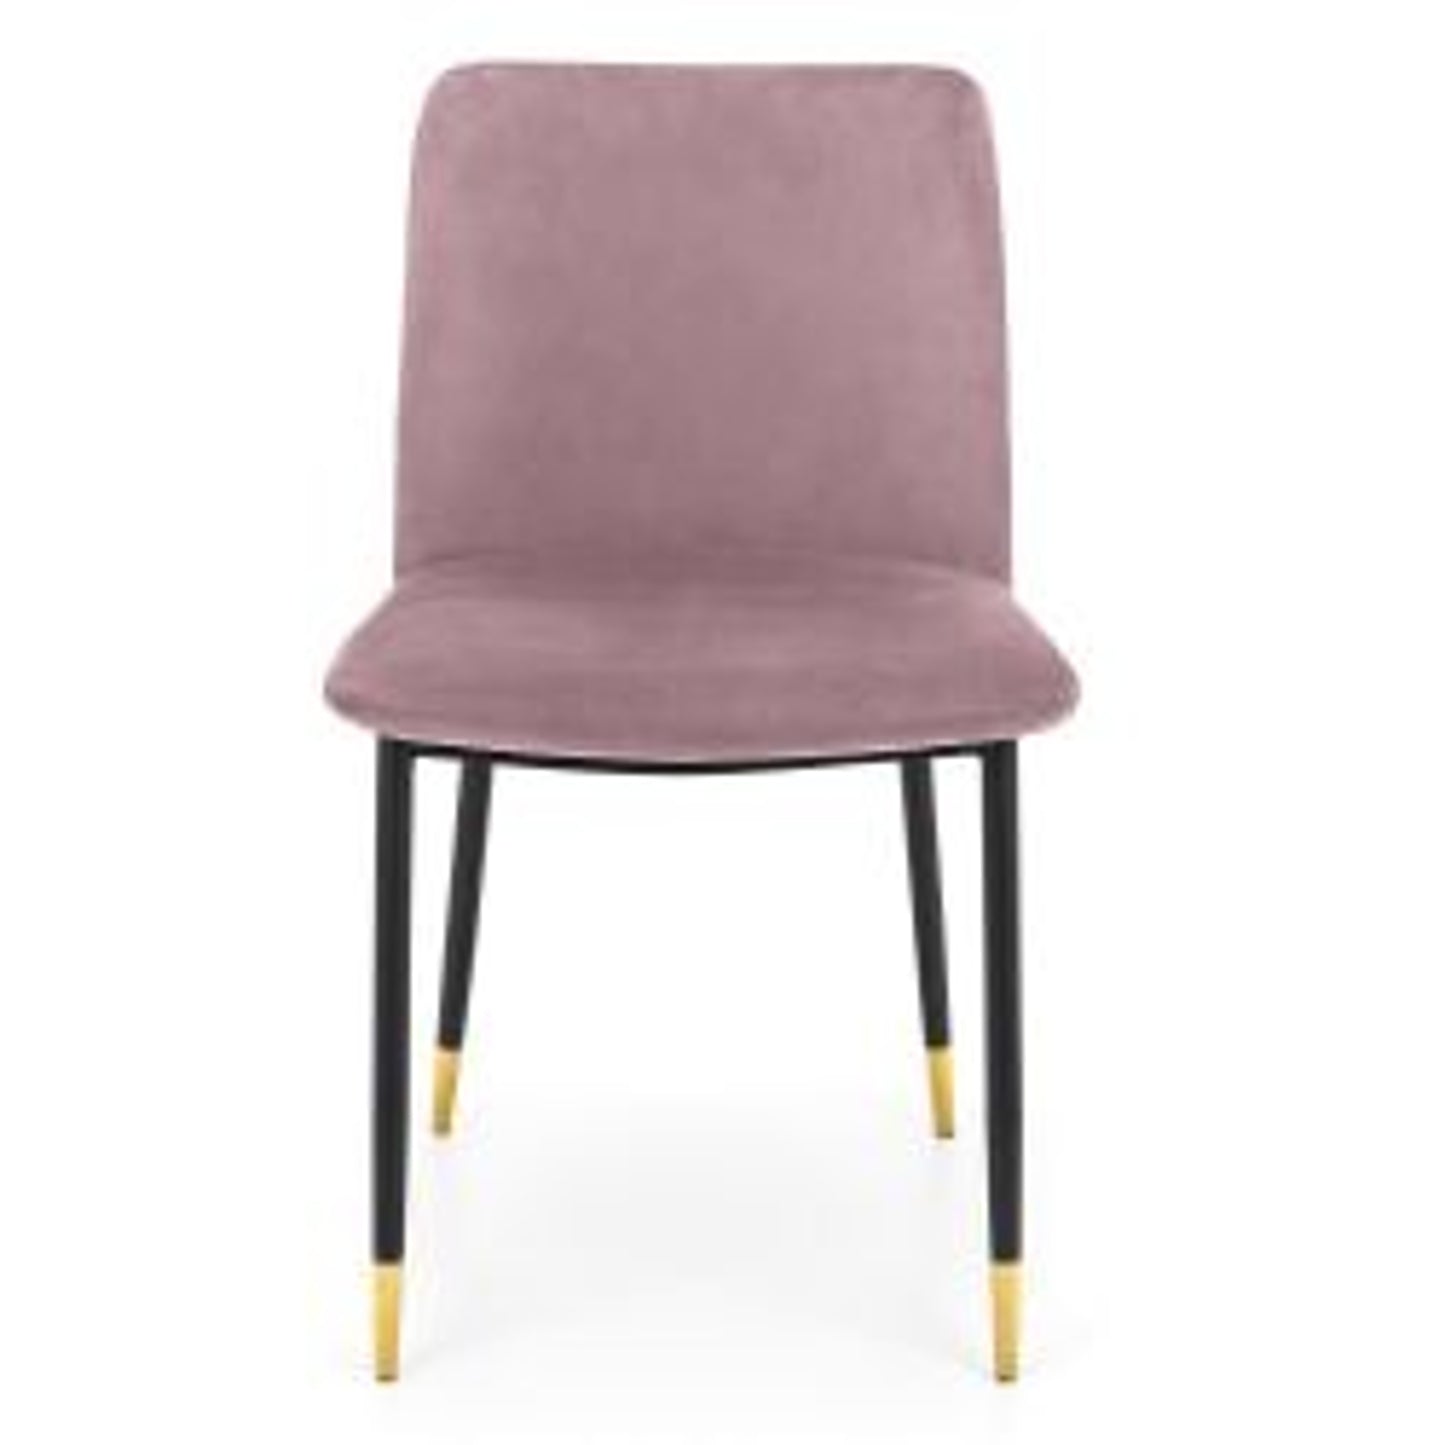 2 Pack Delaunay Dining Chair - Dusky Pink Velvet